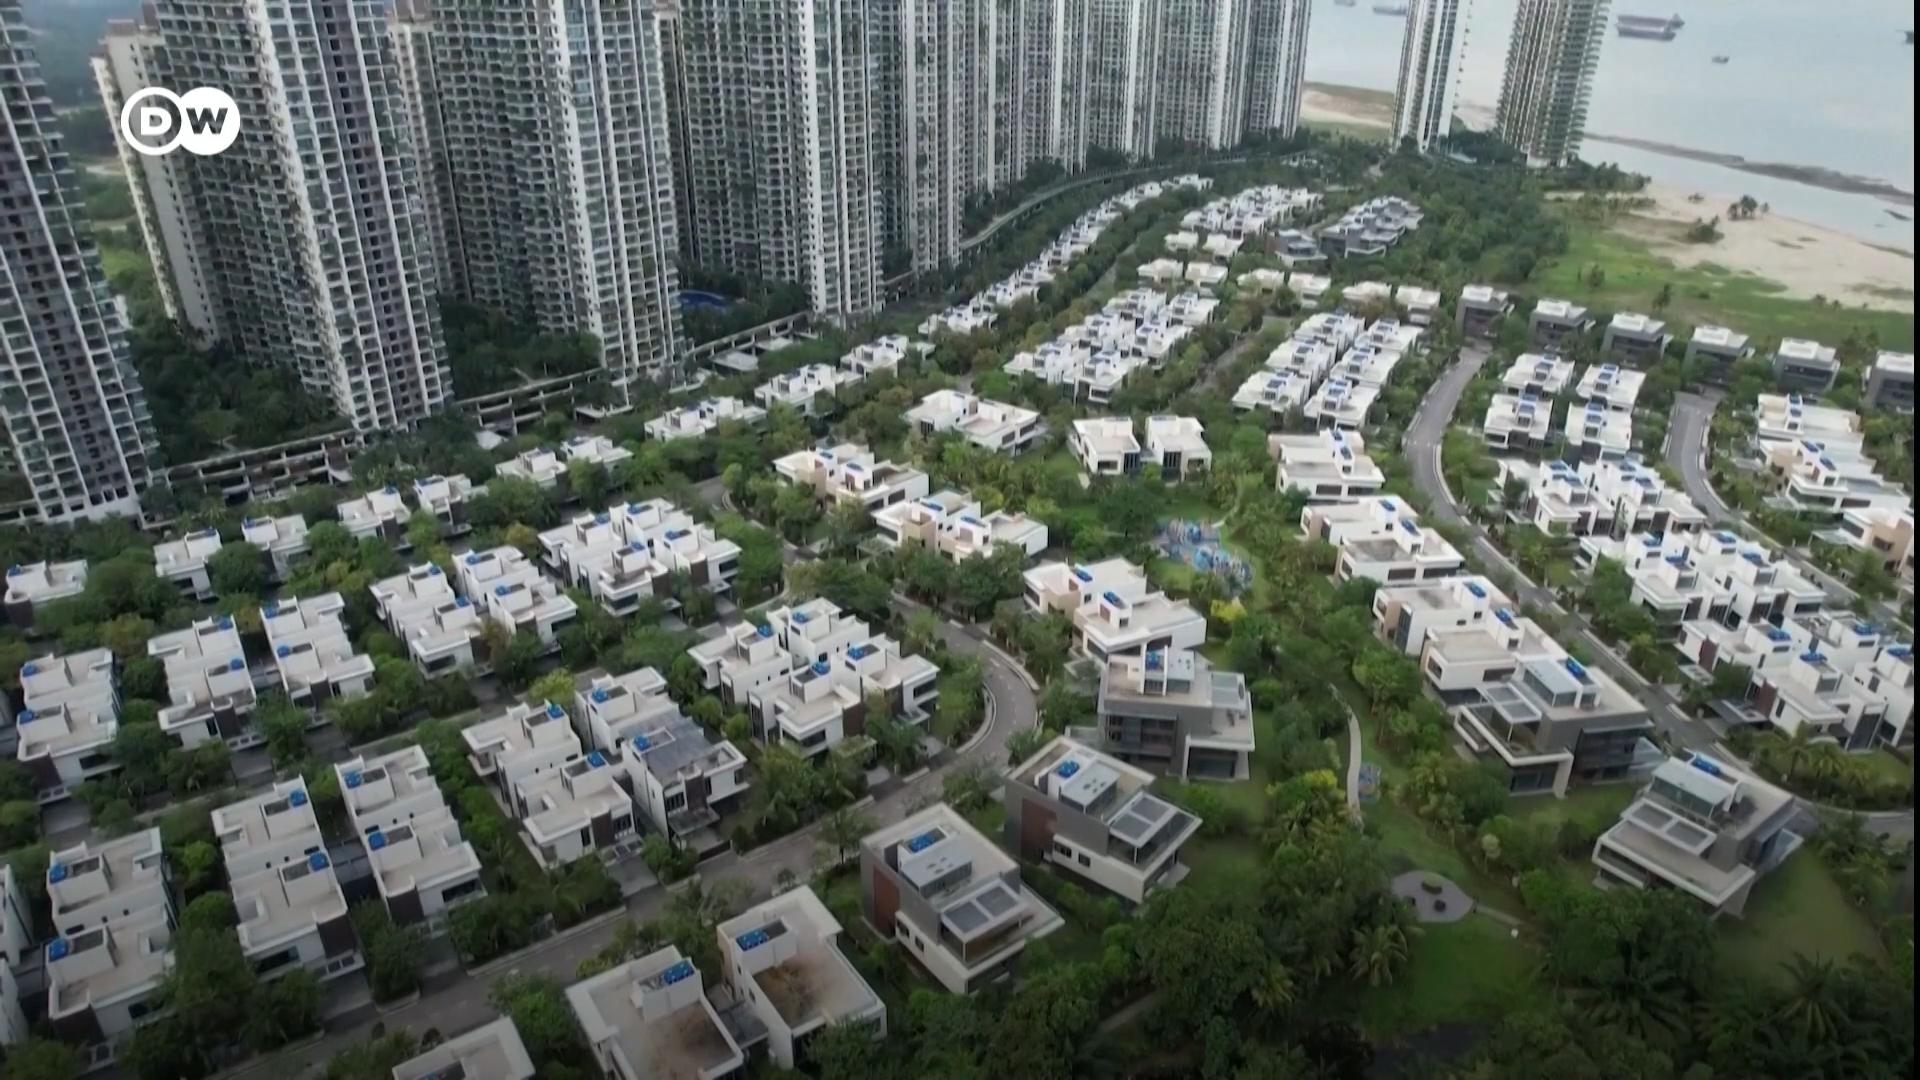 中国最大的私营房地产开发商之一碧桂园周二未能兑现支付一笔到期的离岸债务利息。